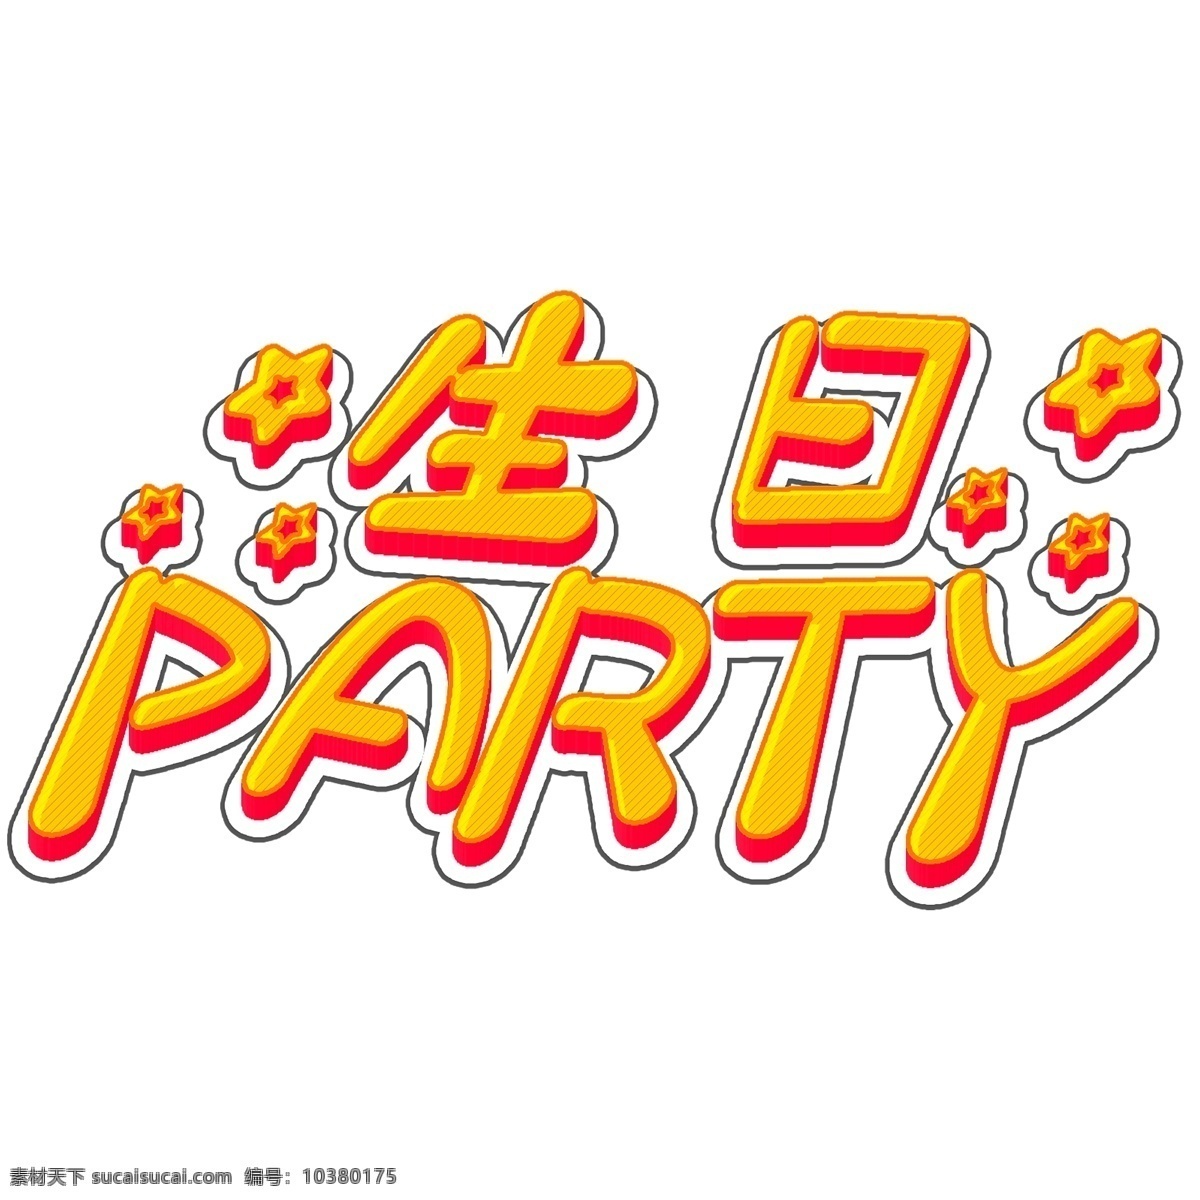 生日 party 立体 字体 3d 快乐 生日快乐 立体字体 创意字体